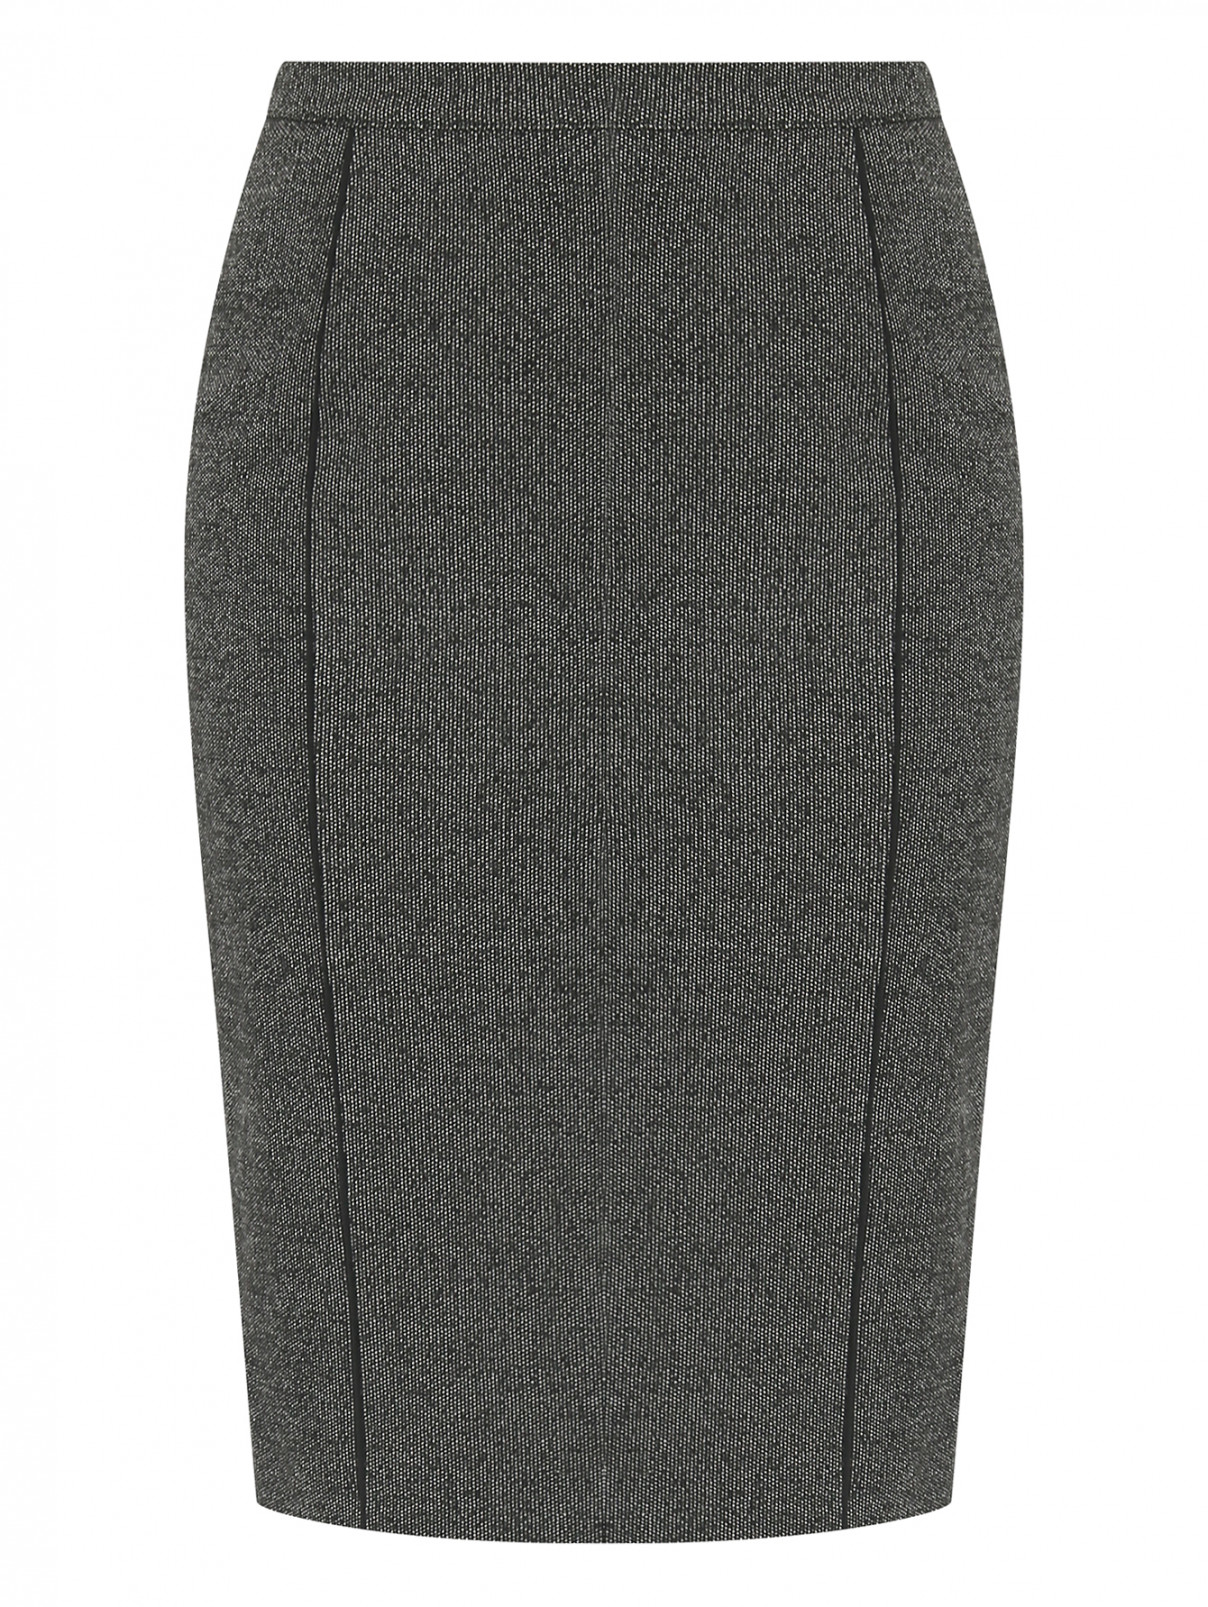 Юбка с рельефными швами Marina Rinaldi  –  Общий вид  – Цвет:  Серый